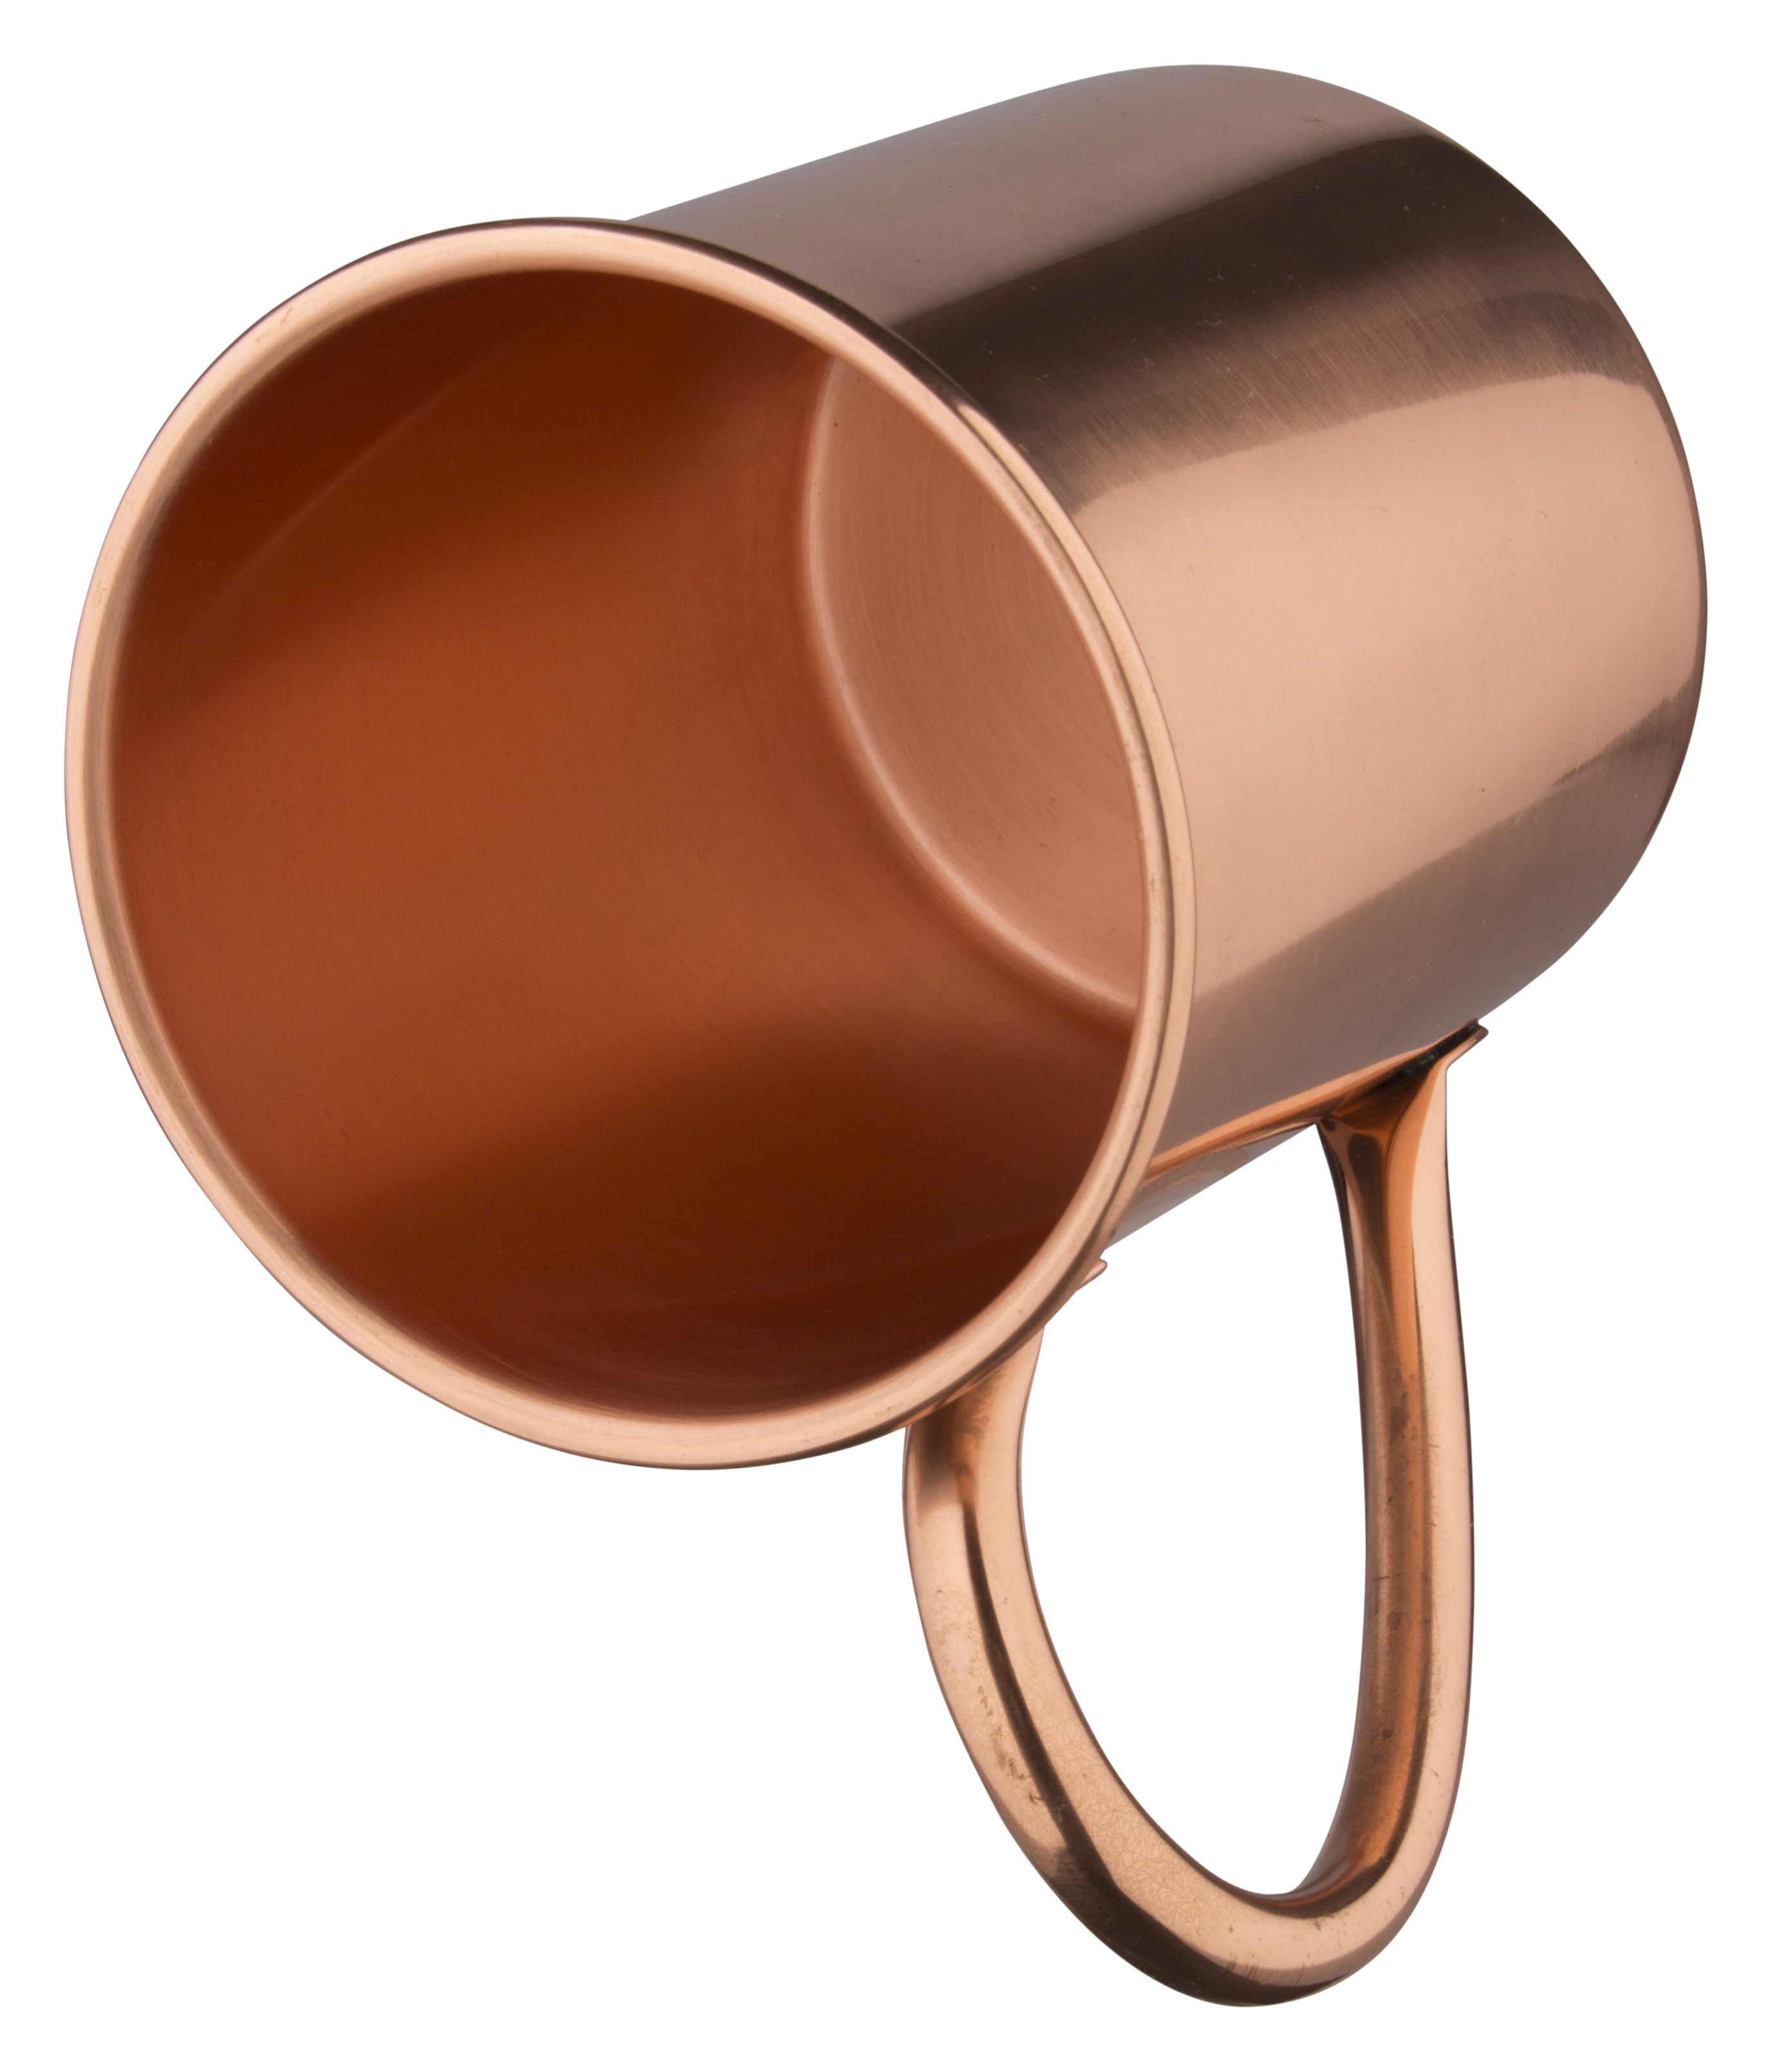 Moscow Mule copper mug - 430ml-470ml